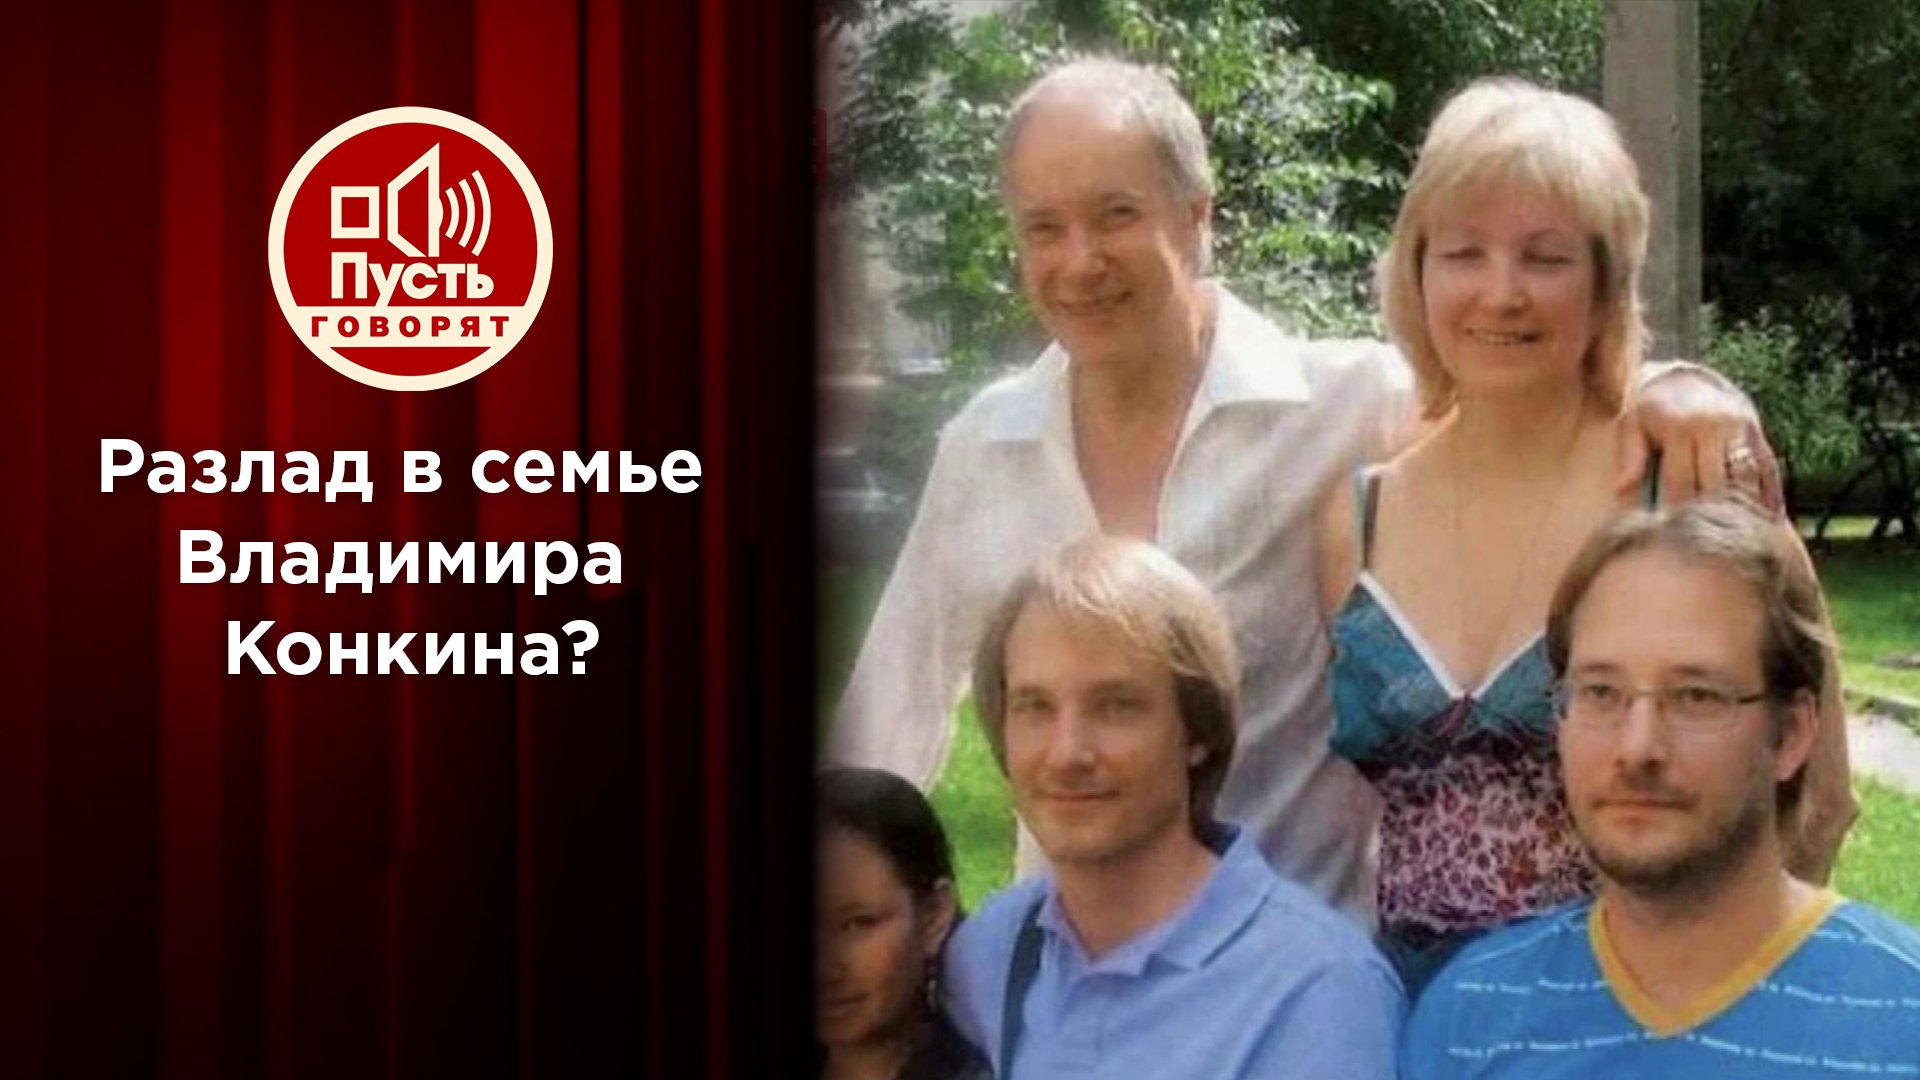 «Пусть говорят». Сыновья Владимира Конкина обвиняют директора отца в трагедиях семьи?